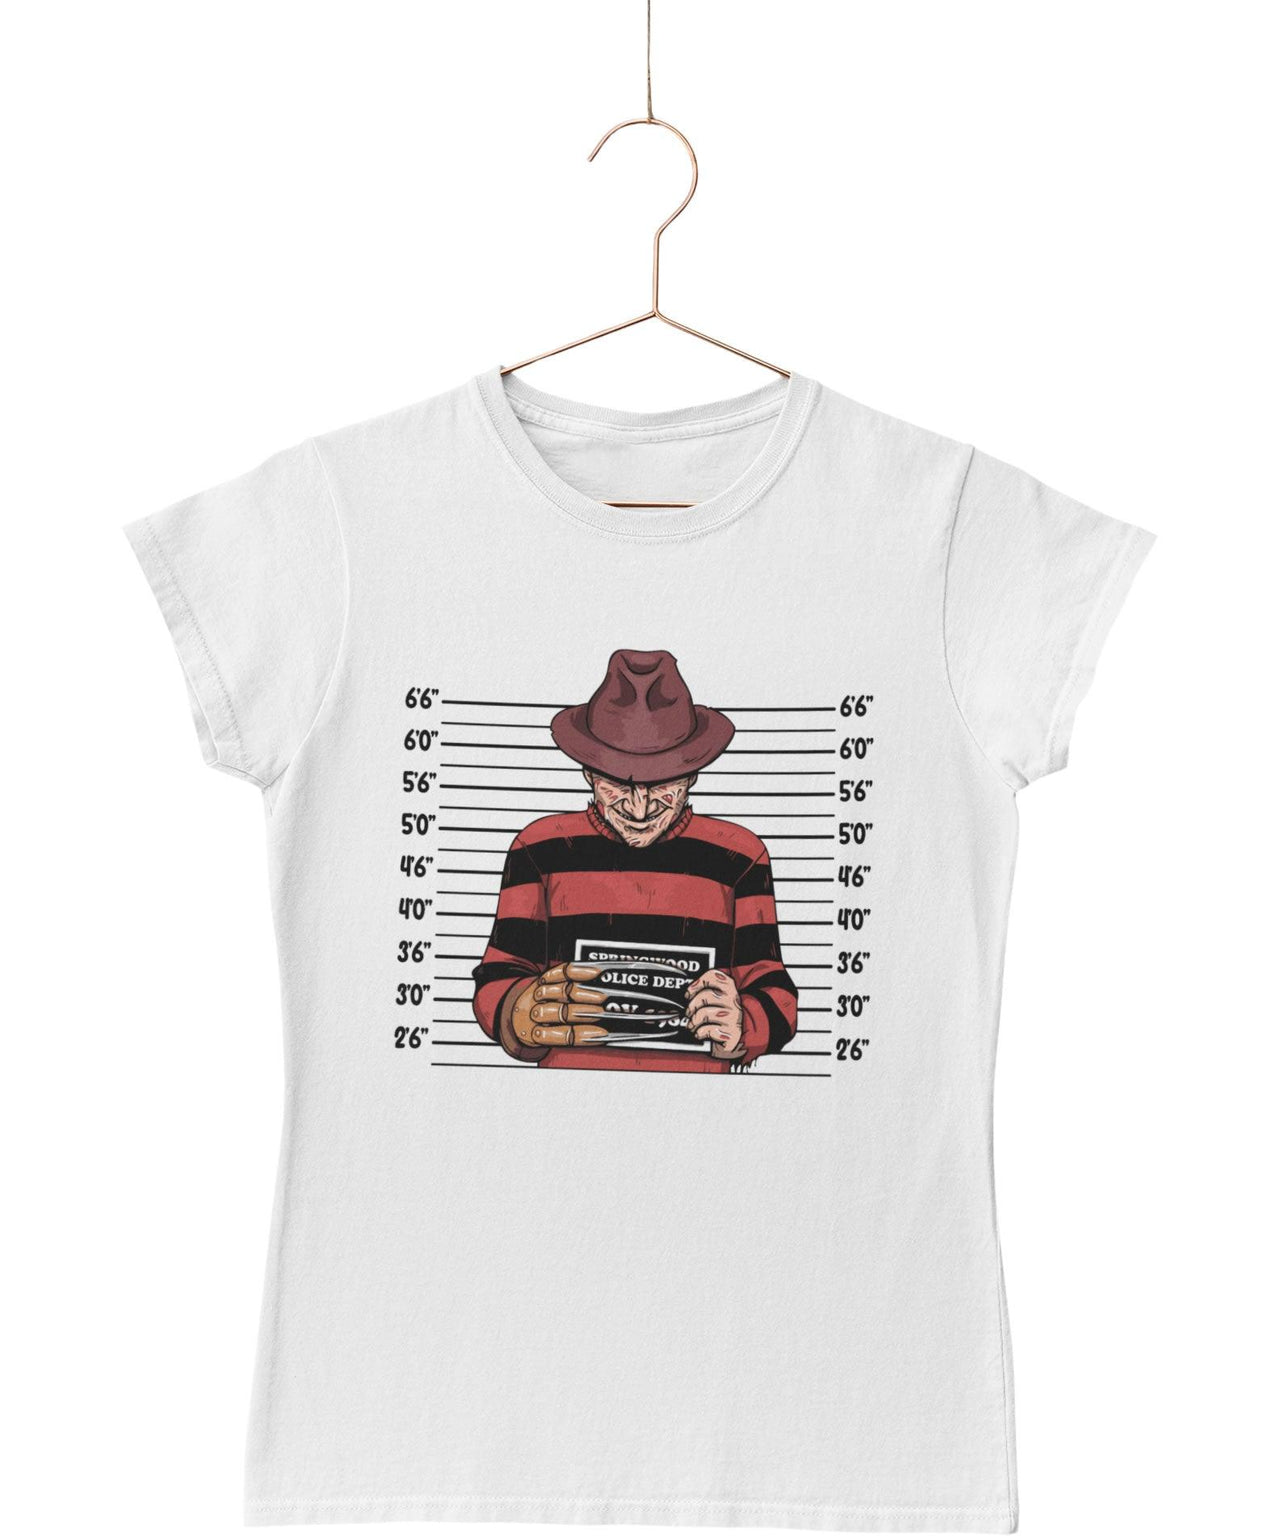 Freddy Krueger Mugshot Horror Film Tribute T-Shirt for Women 8Ball